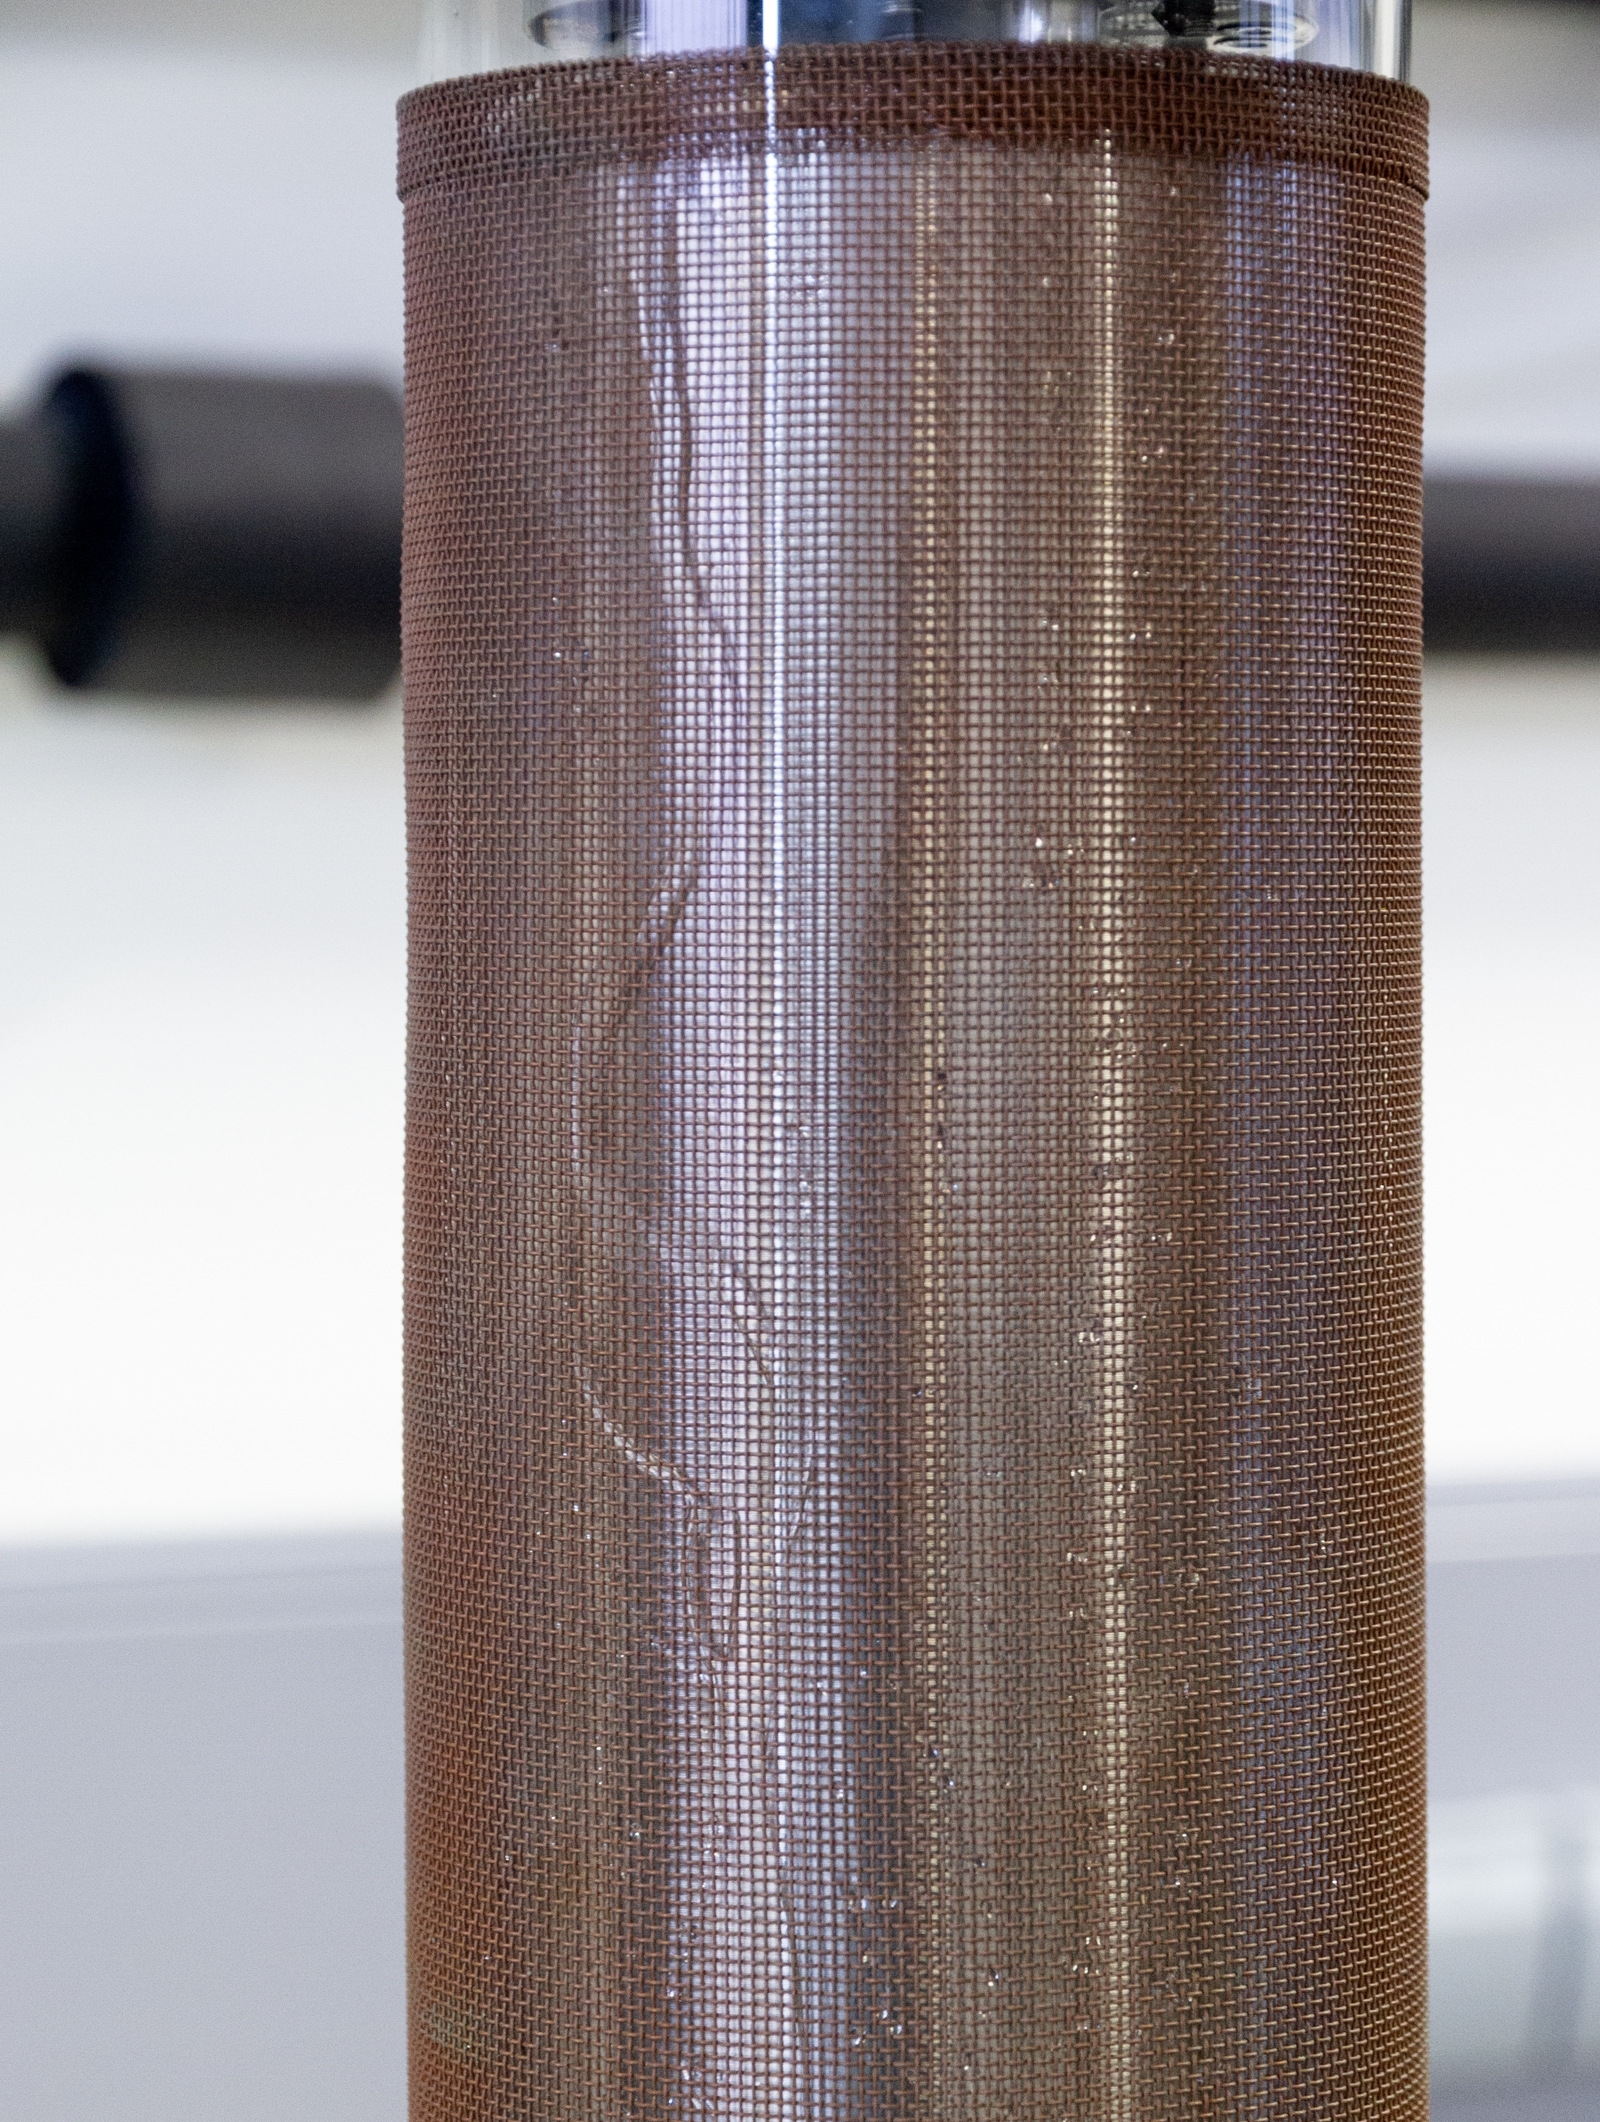 Detaildarstellung eines koaxialen DBD-Reaktors mit Wasserfilm. 